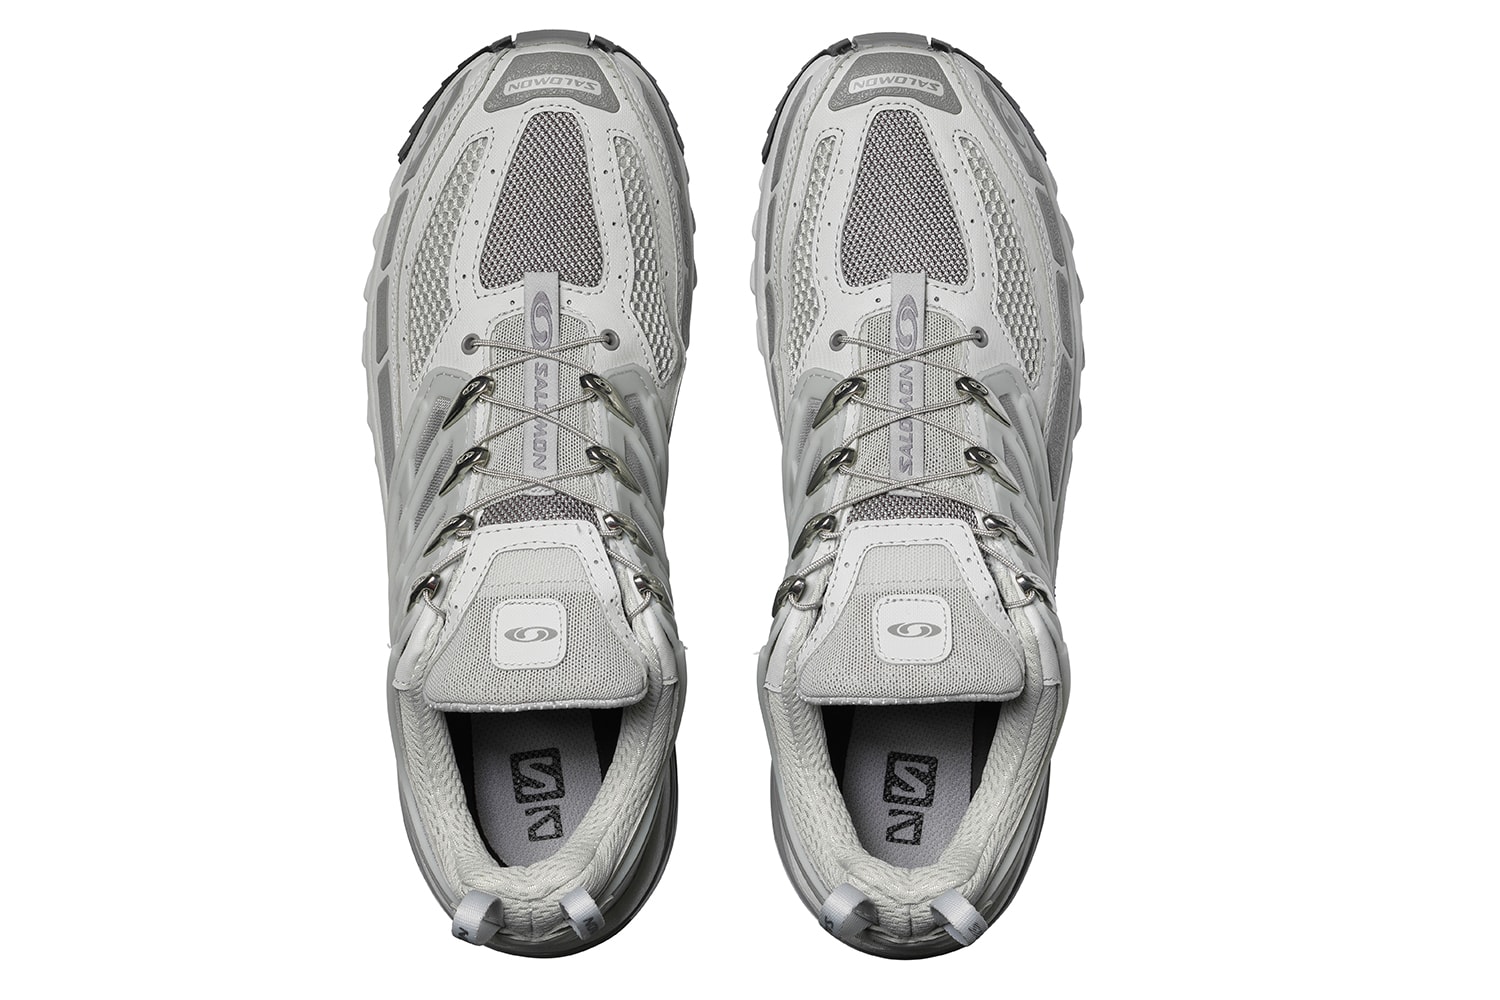 Salomon 全新 ACS PRO ADVANCED 鞋款正式登场